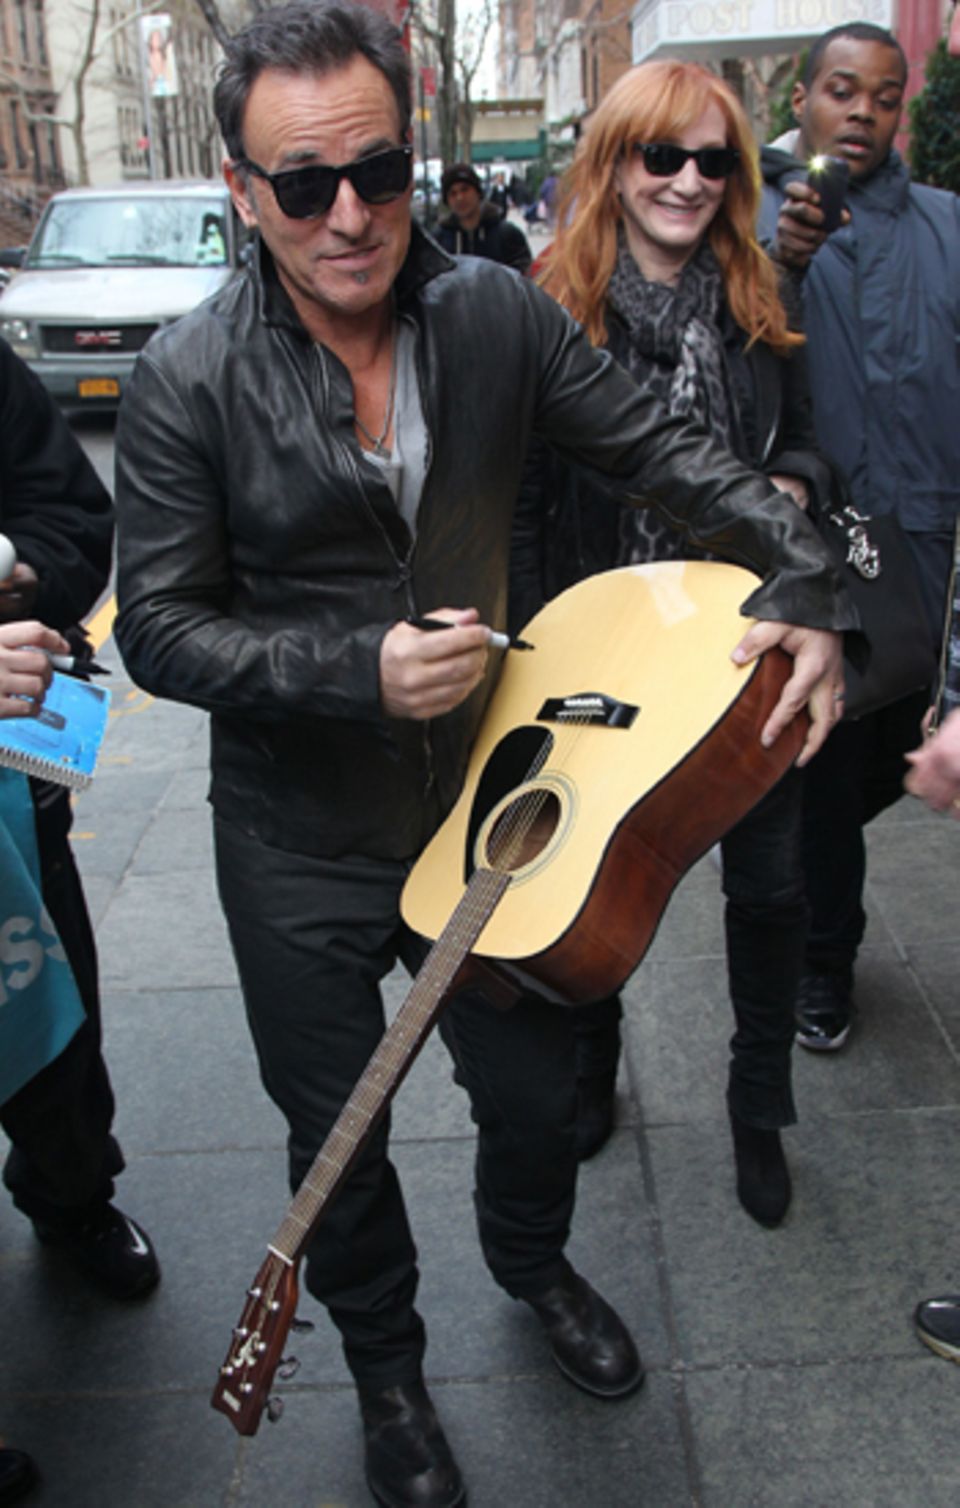 Gerne gibt Bruce Springsteen ein Autogramm auf einer Gitarre.